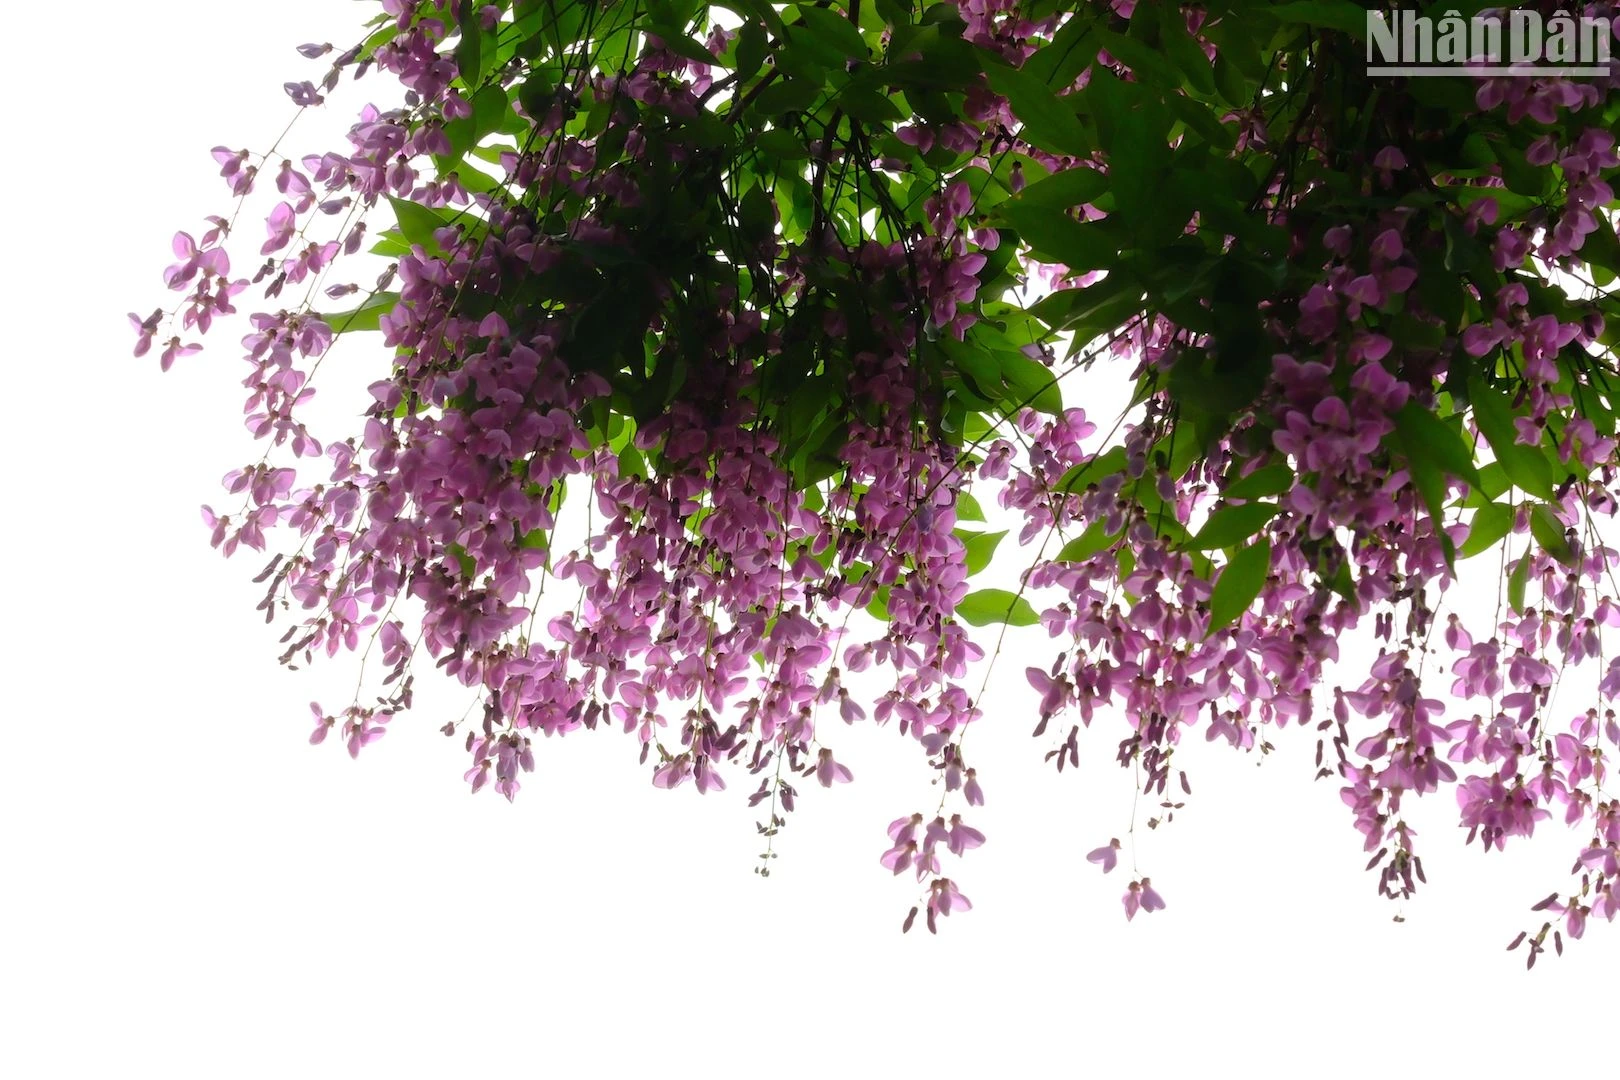 Bán đảo Sơn Trà - mùa hoa thàn mát tím ảnh 14